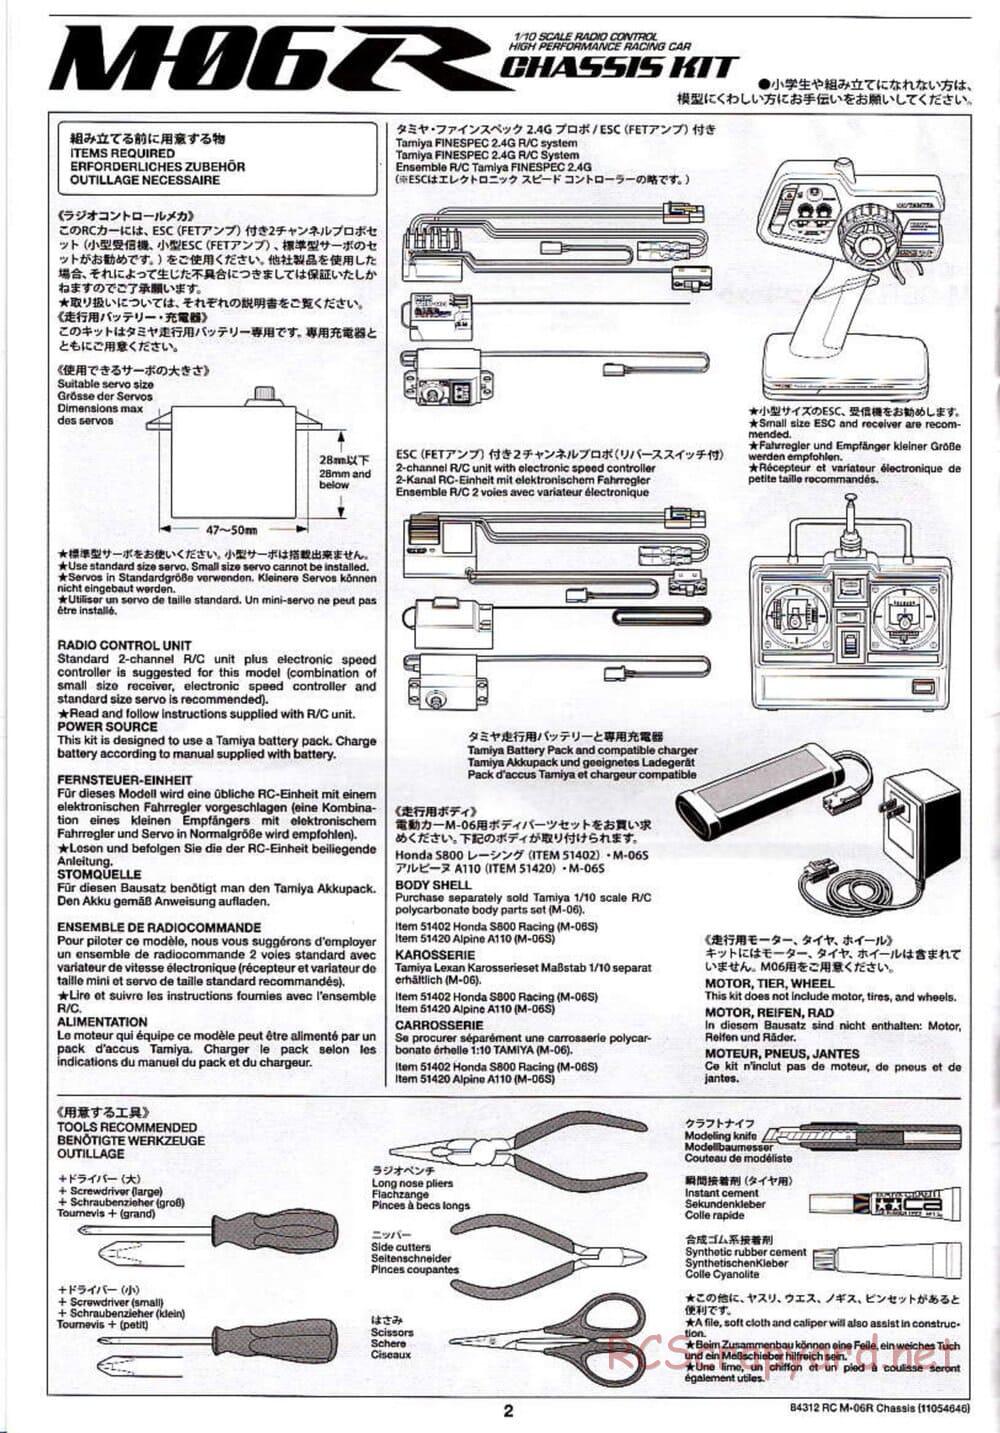 Tamiya - M-06R Chassis - Manual - Page 2